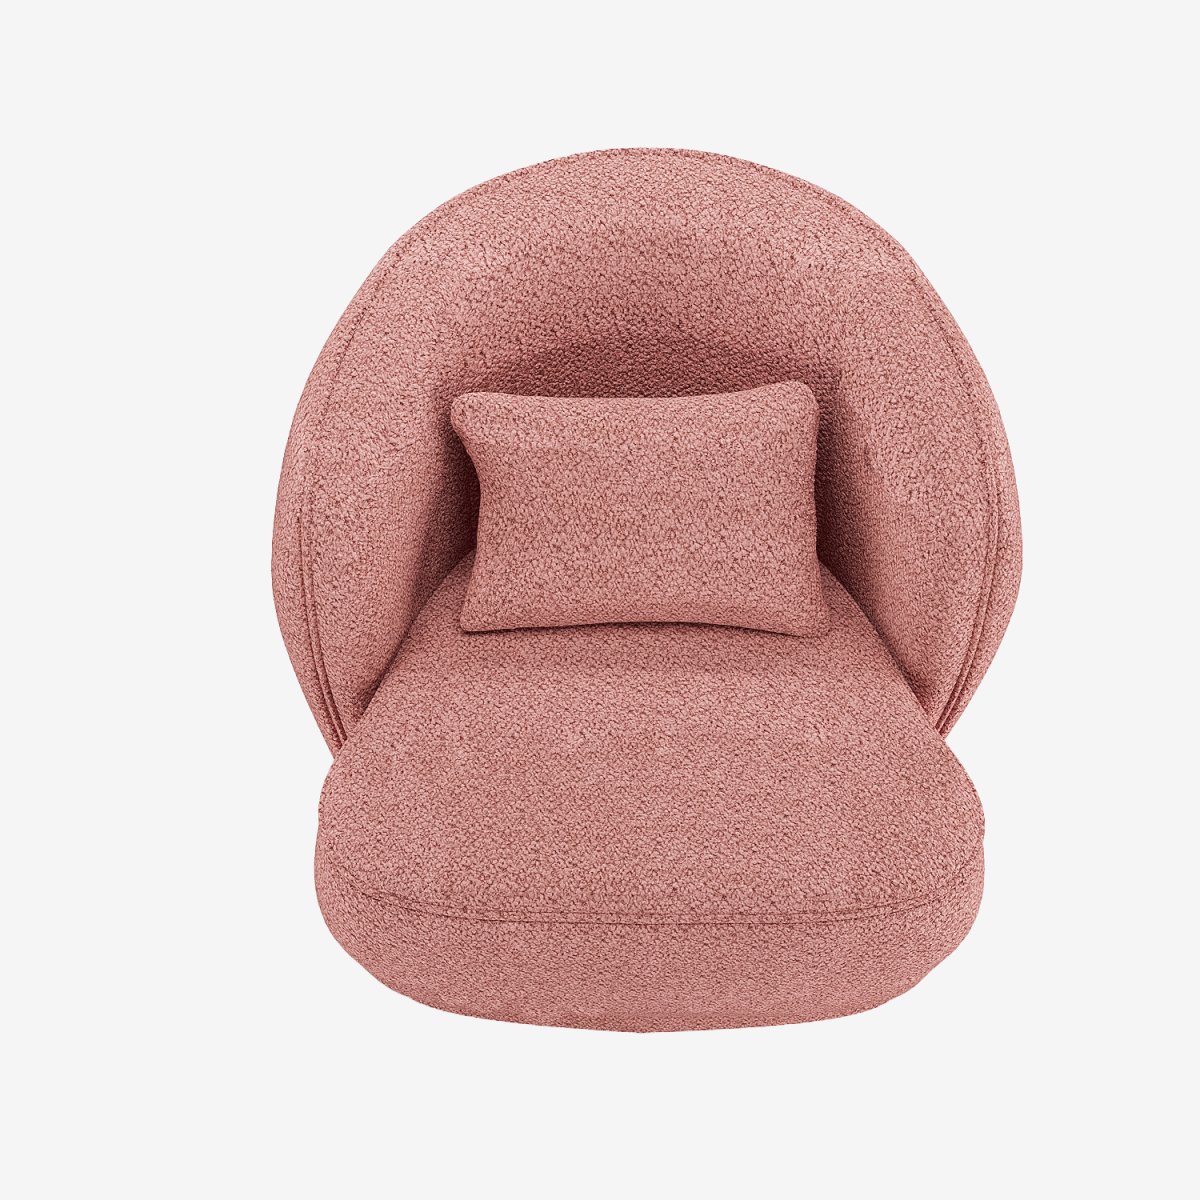 Grand fauteuil confortable bouclé rose Pablo - Potiron Paris, déco et meuble contemporain design pas cher